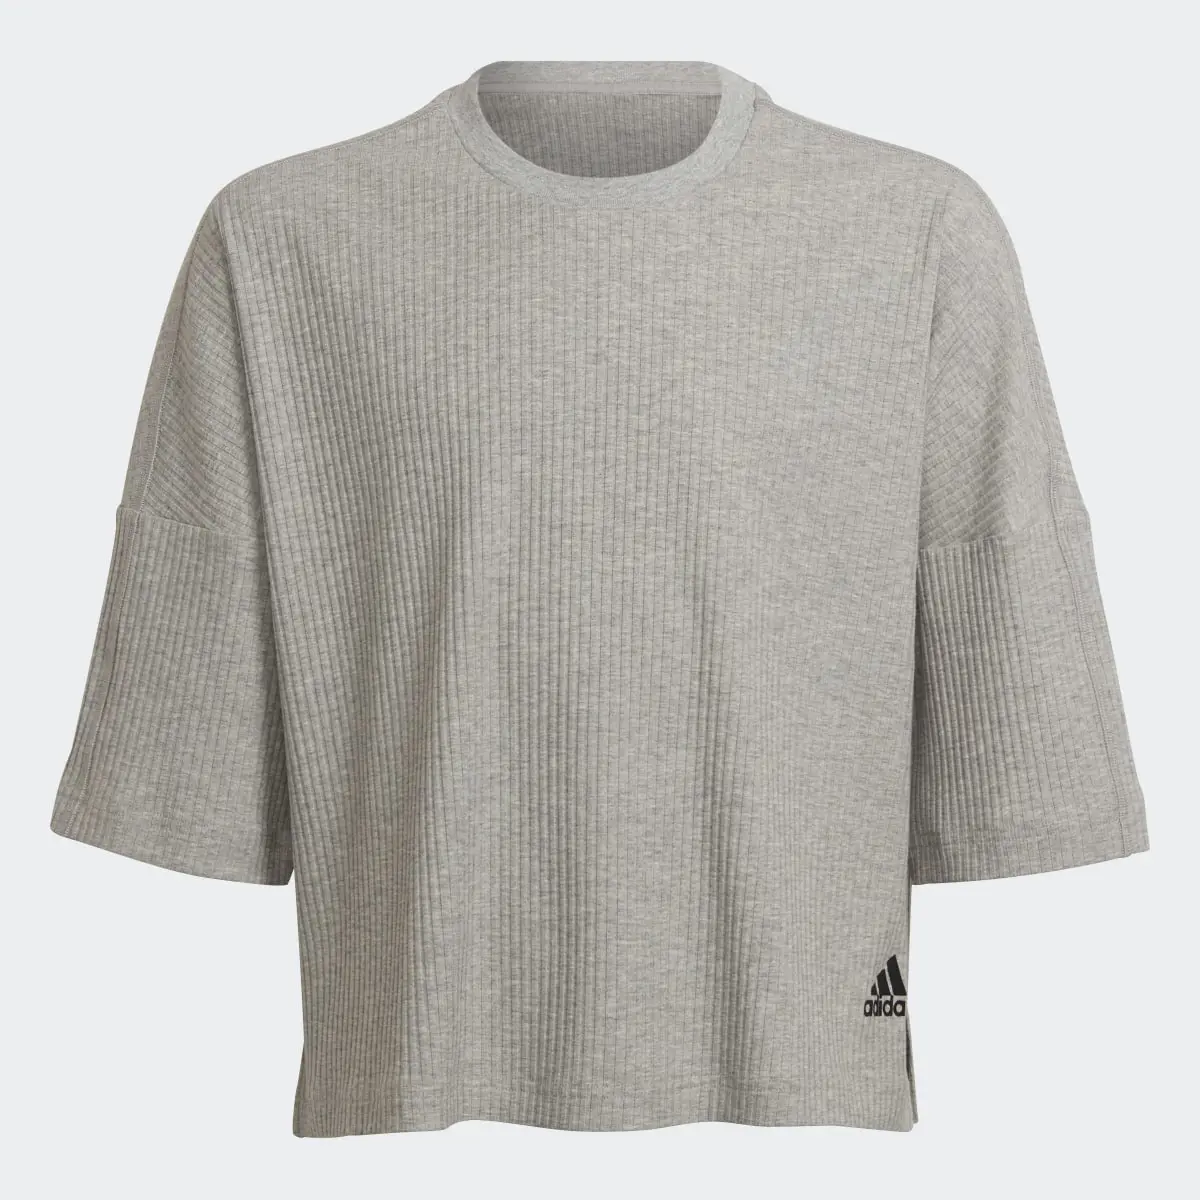 Adidas Yoga Lounge Cotton Comfort Sweatshirt. 1